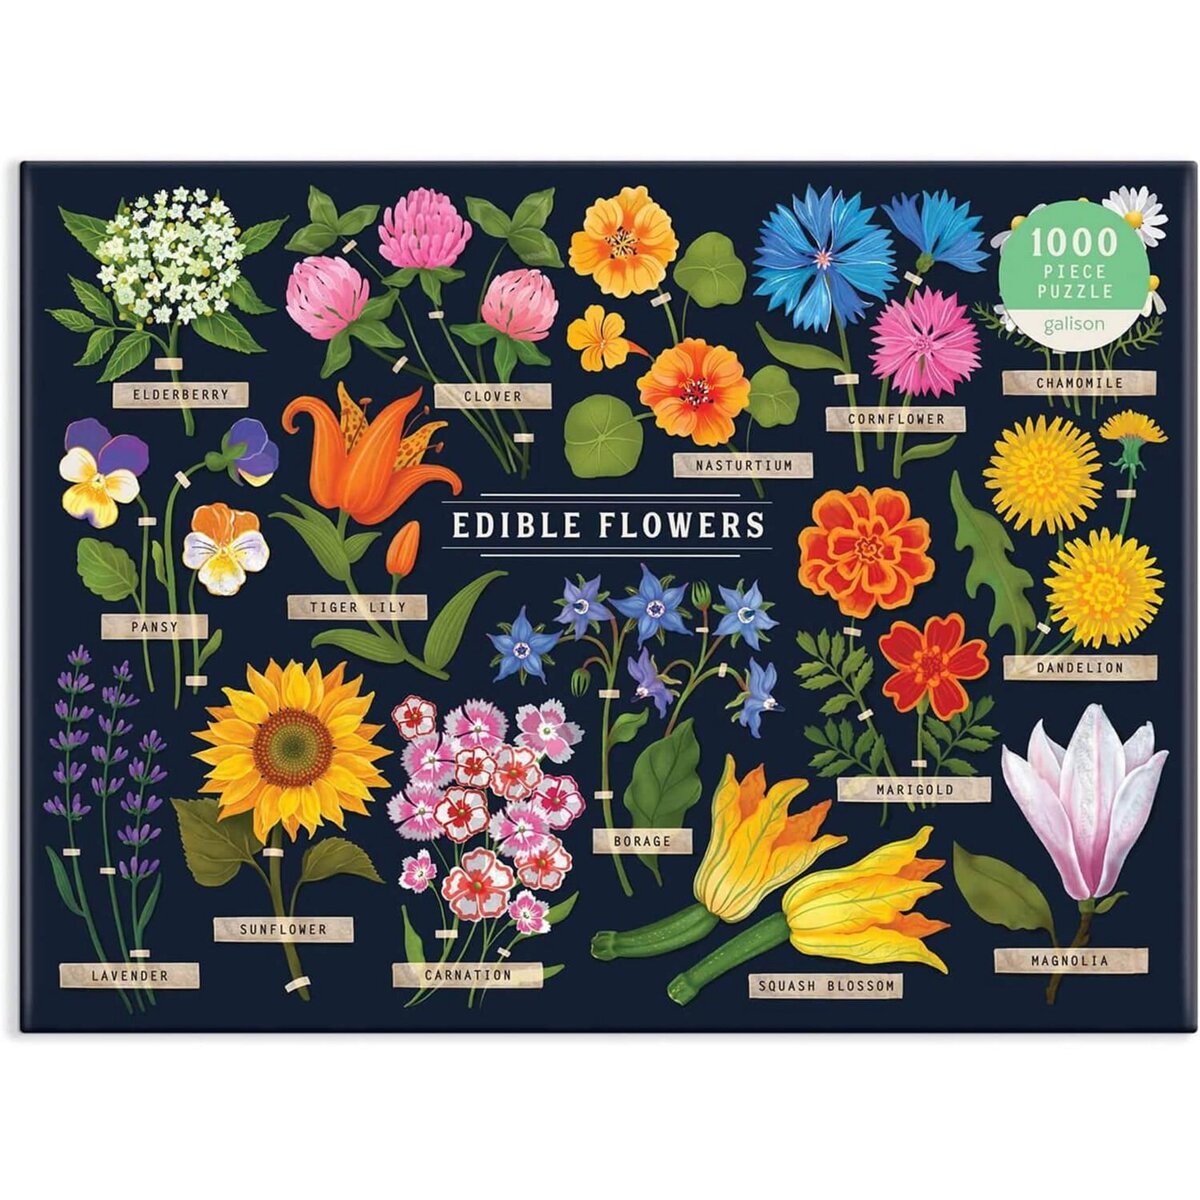 Puzzle 1000 pièces : Flowers - Fleurs pas cher 